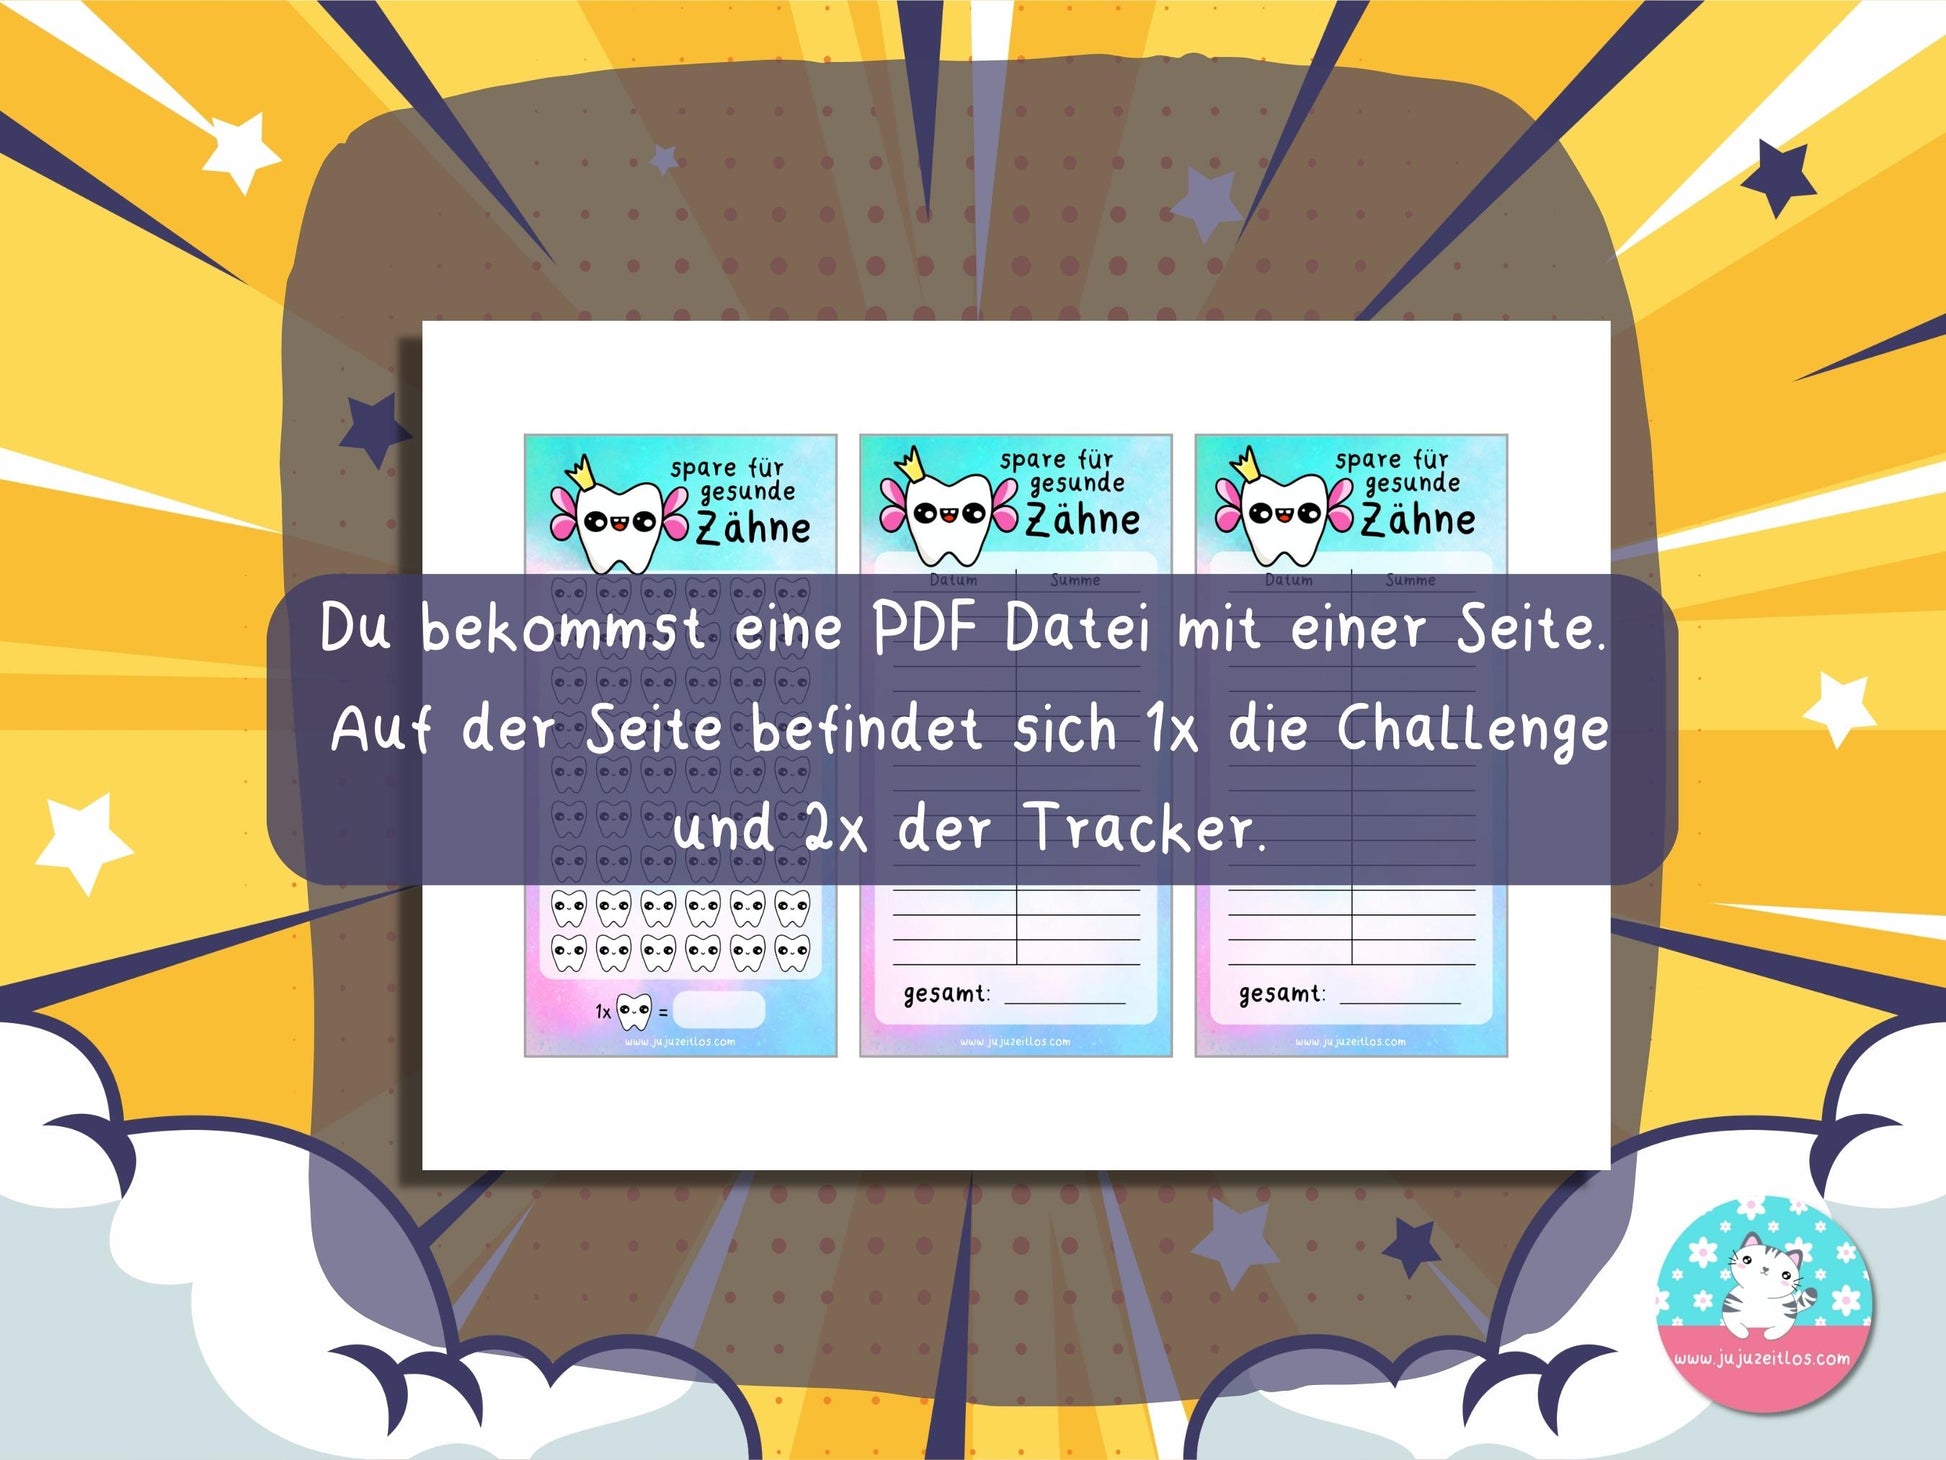 Challenge gesunde Zähne ♡Sparschallenges als Download A6♡ - JujuZeitlos